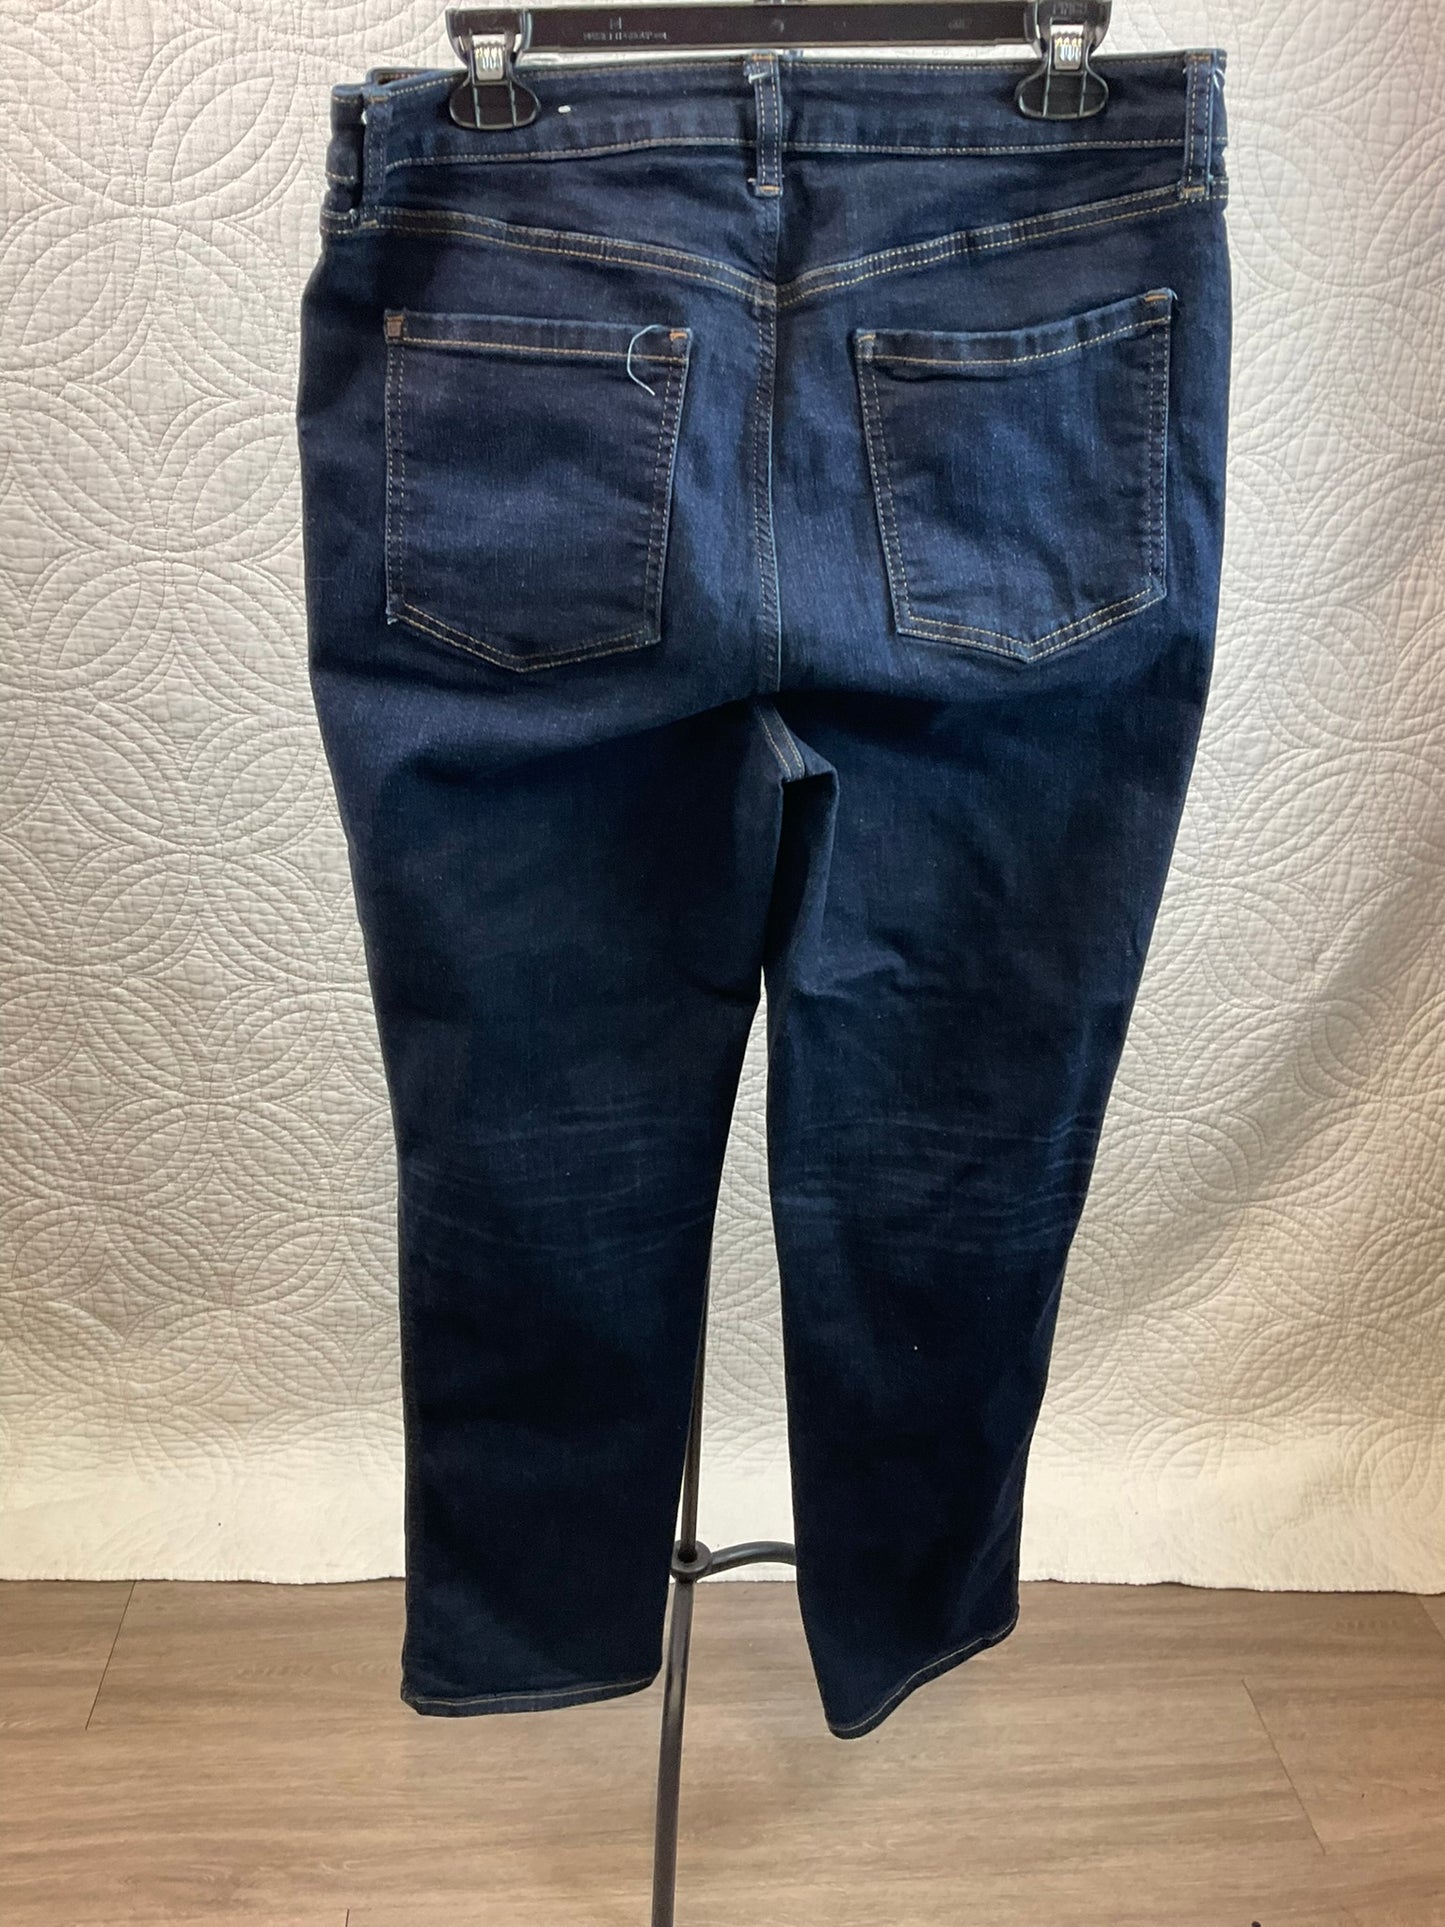 Chico's Dark Wash Jeans, Size 12T/2T